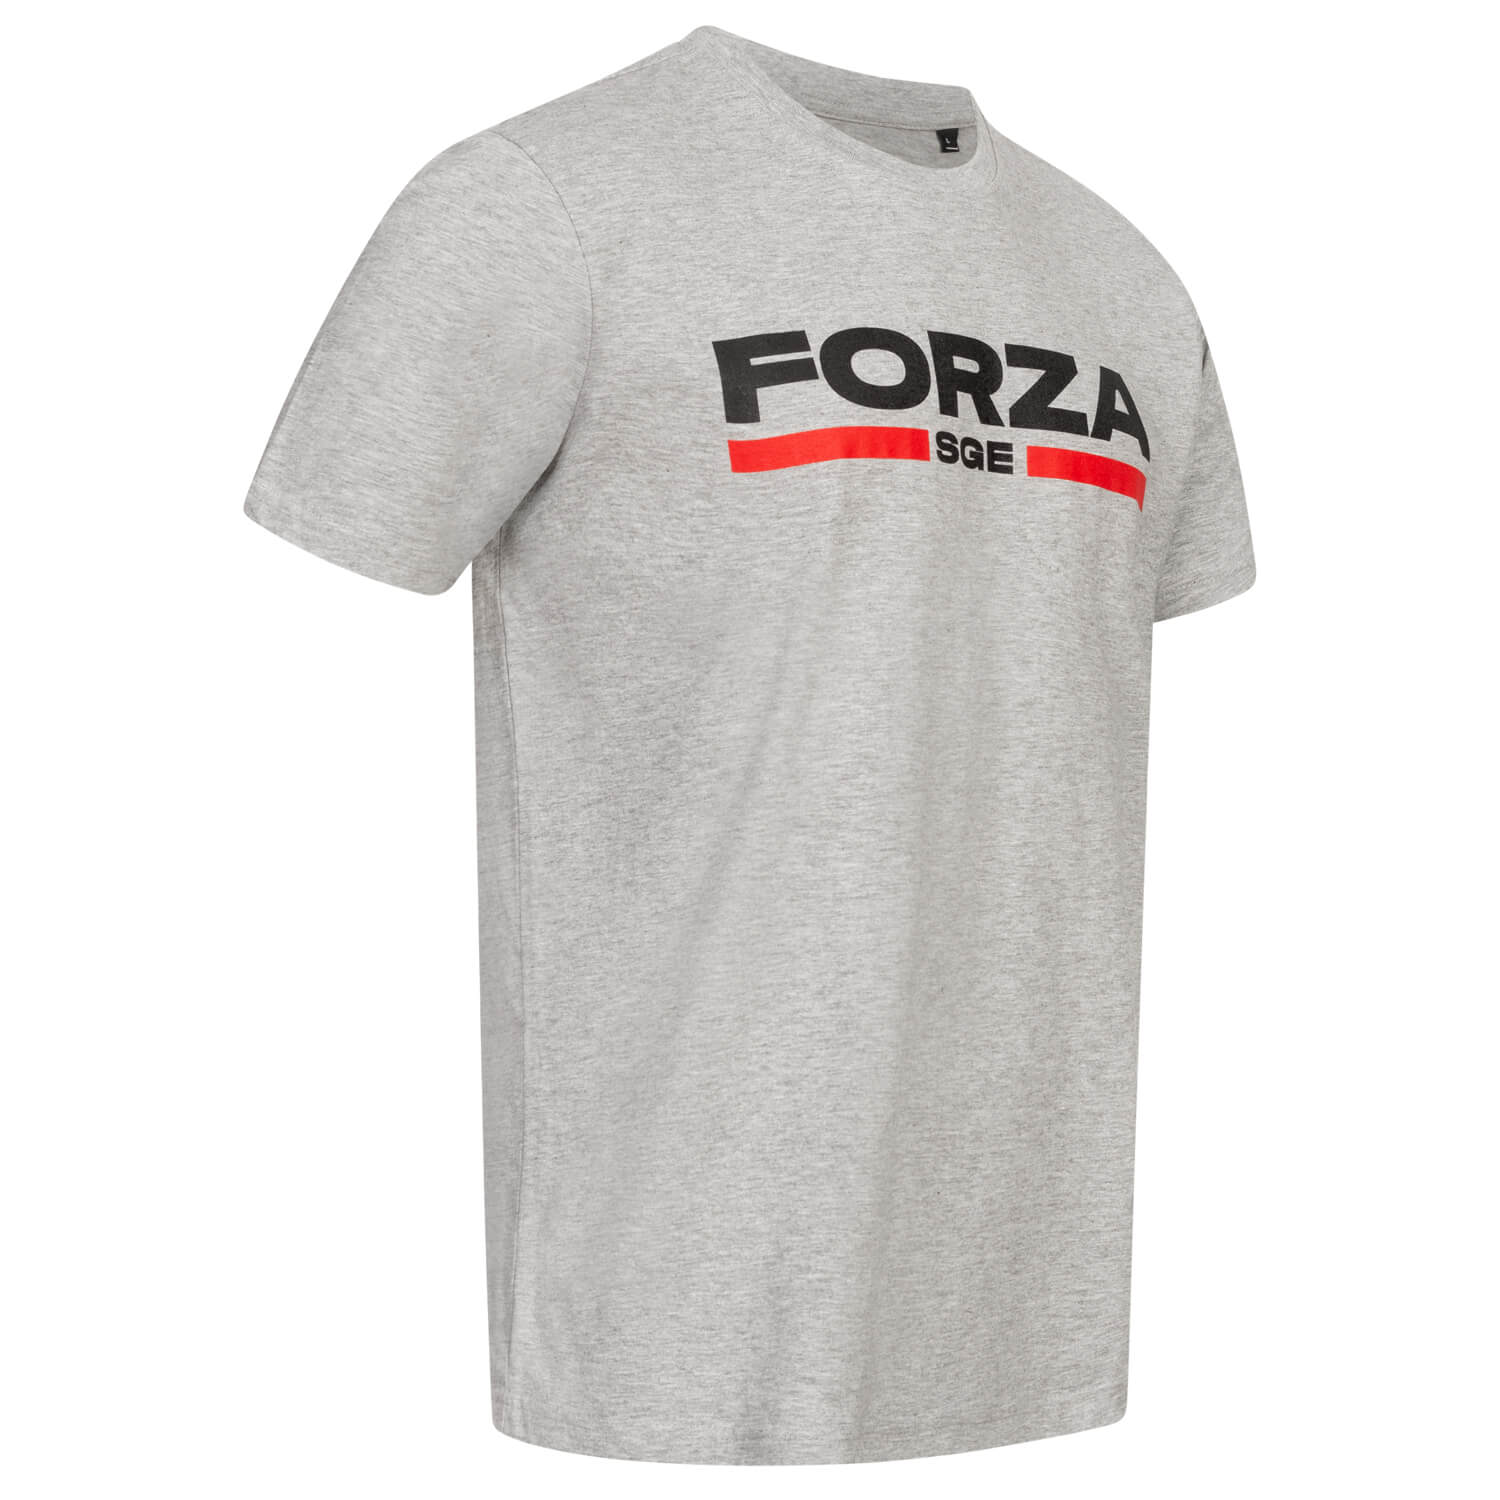 Bild 4: T-Shirt Forza SGE 